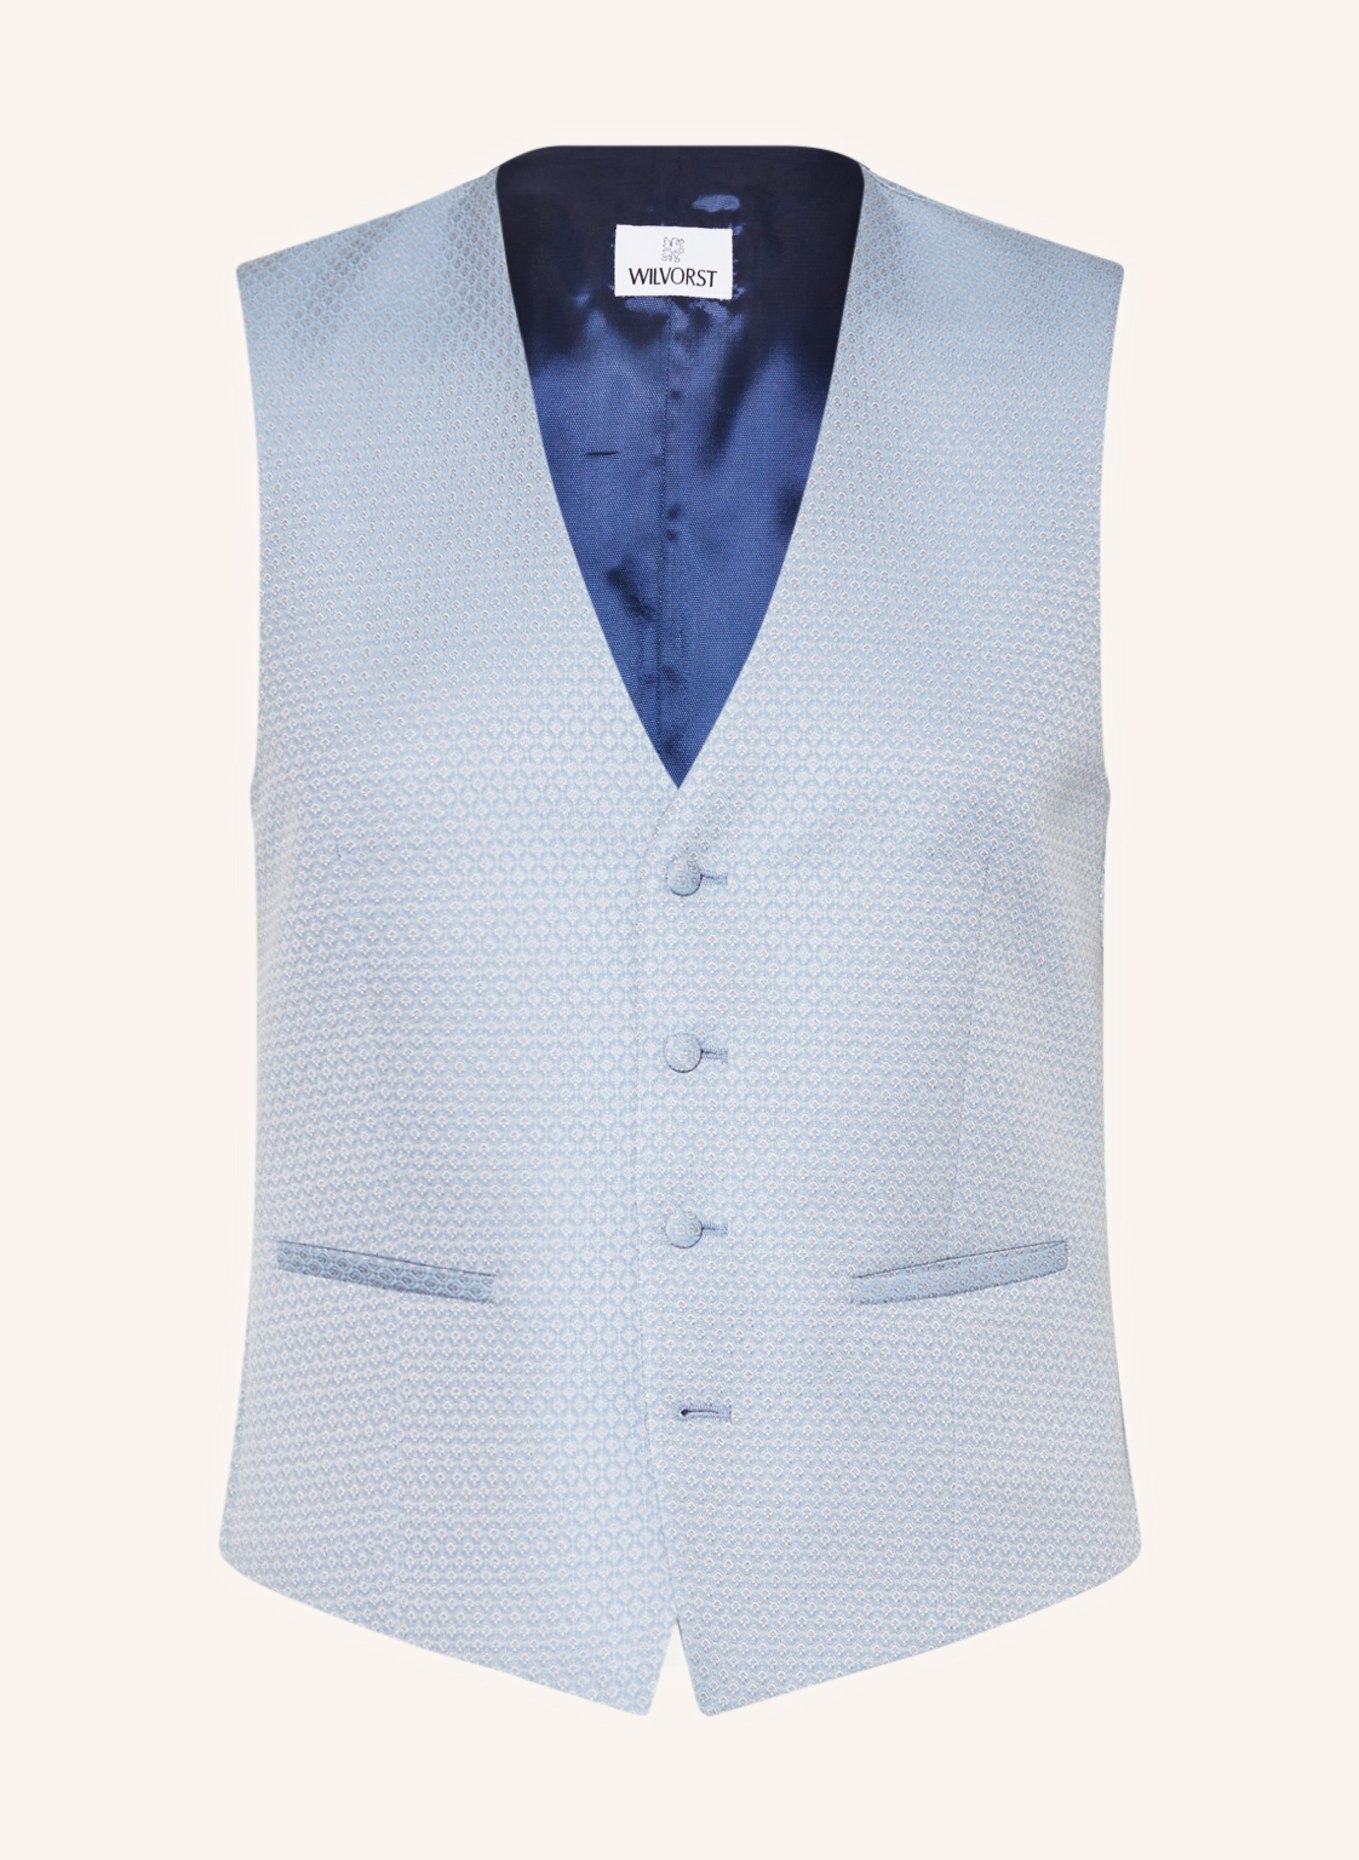 WILVORST Suit vest extra slim fit, Color: 030 hell Blau gem. (Image 1)